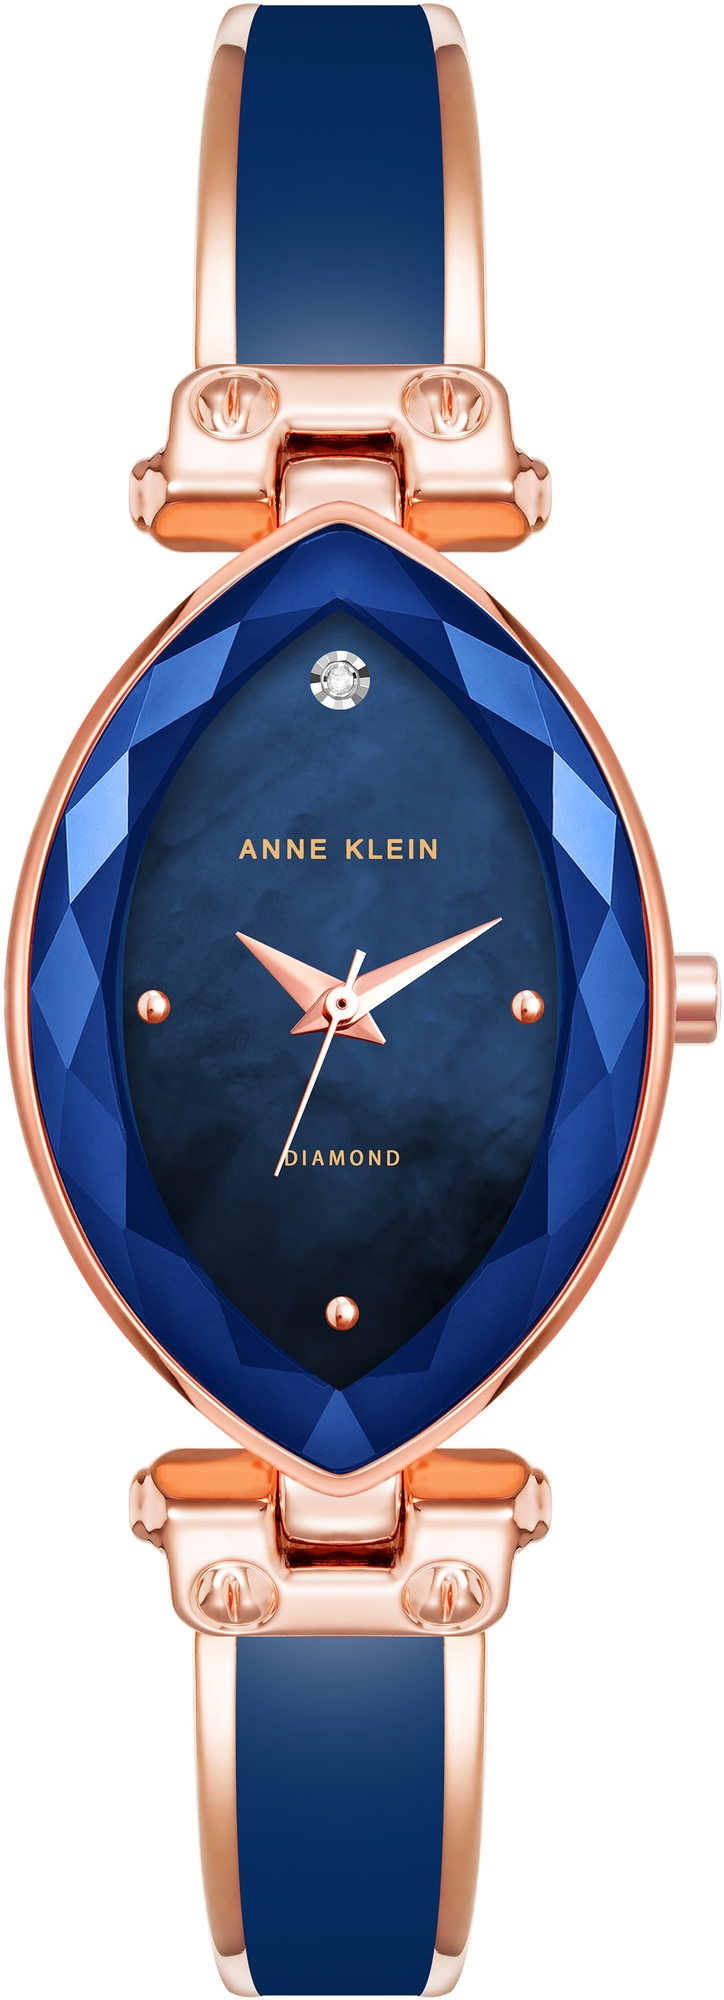 Наручные часы Anne Klein 4018NVRG hand around стальное граненое кольцо